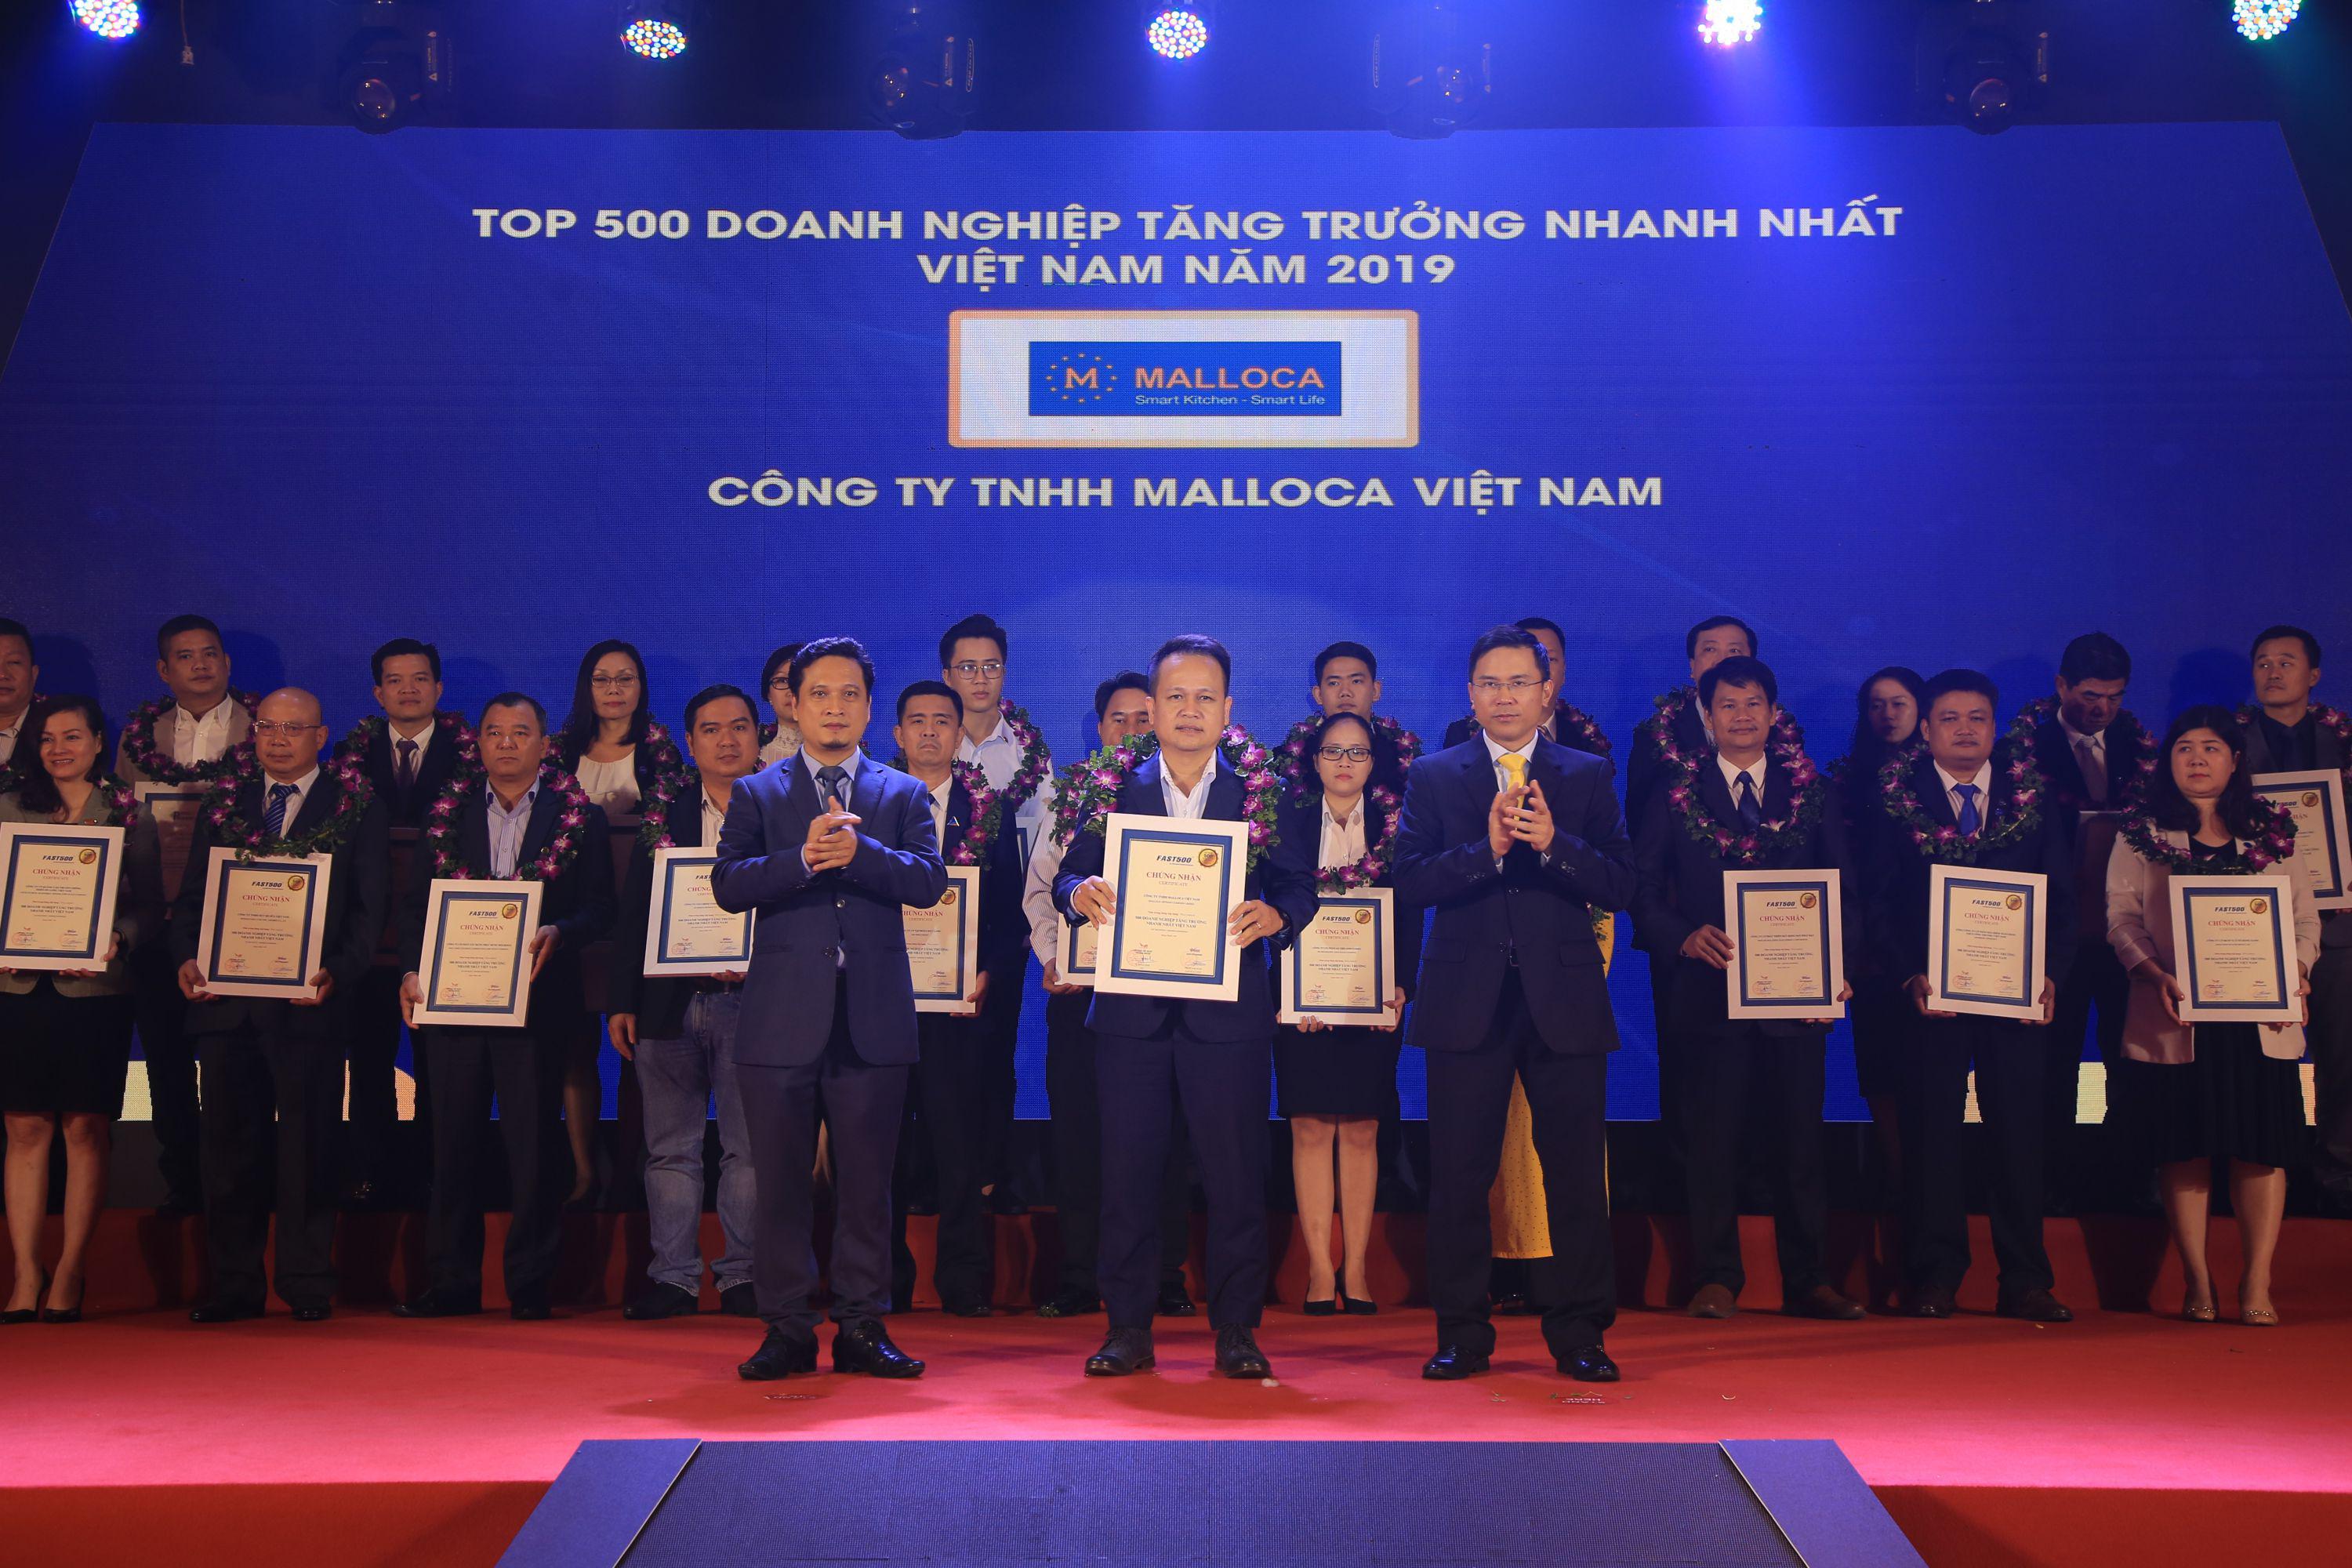 Malloca vinh dự nhận giải thưởng Top 500 doanh nghiệp tăng trưởng nhanh nhất 2019 – FAST 500